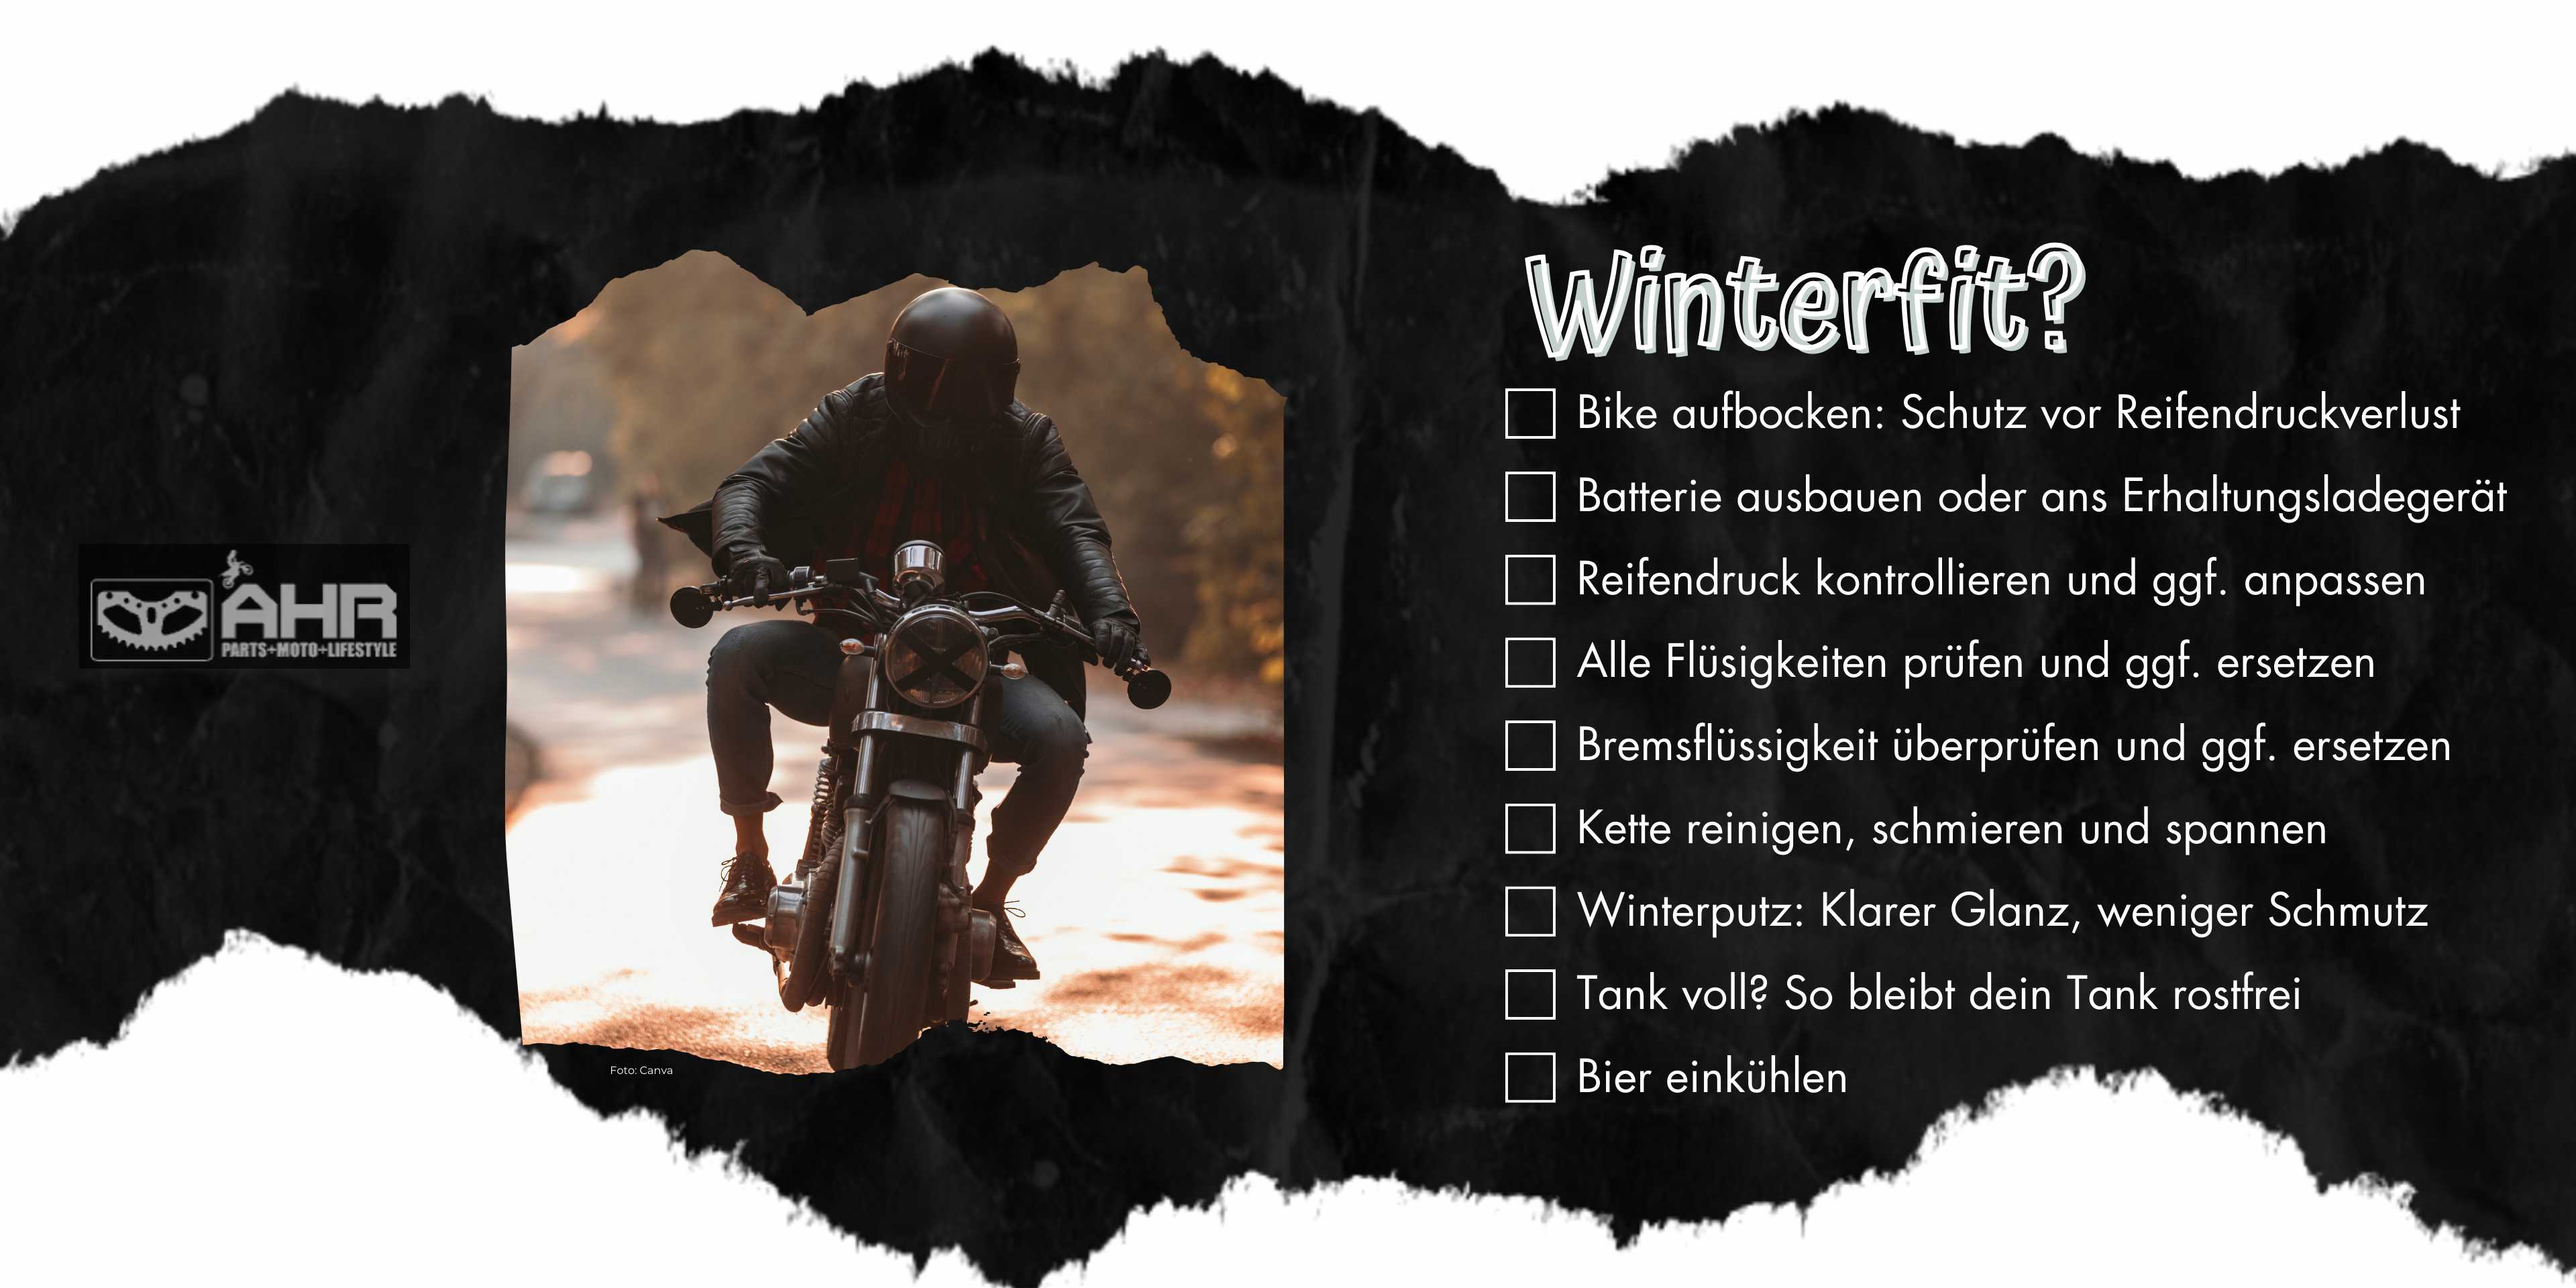 Mach dein Motorrad winterfit: Dein Guide für die kalte Jahreszeit